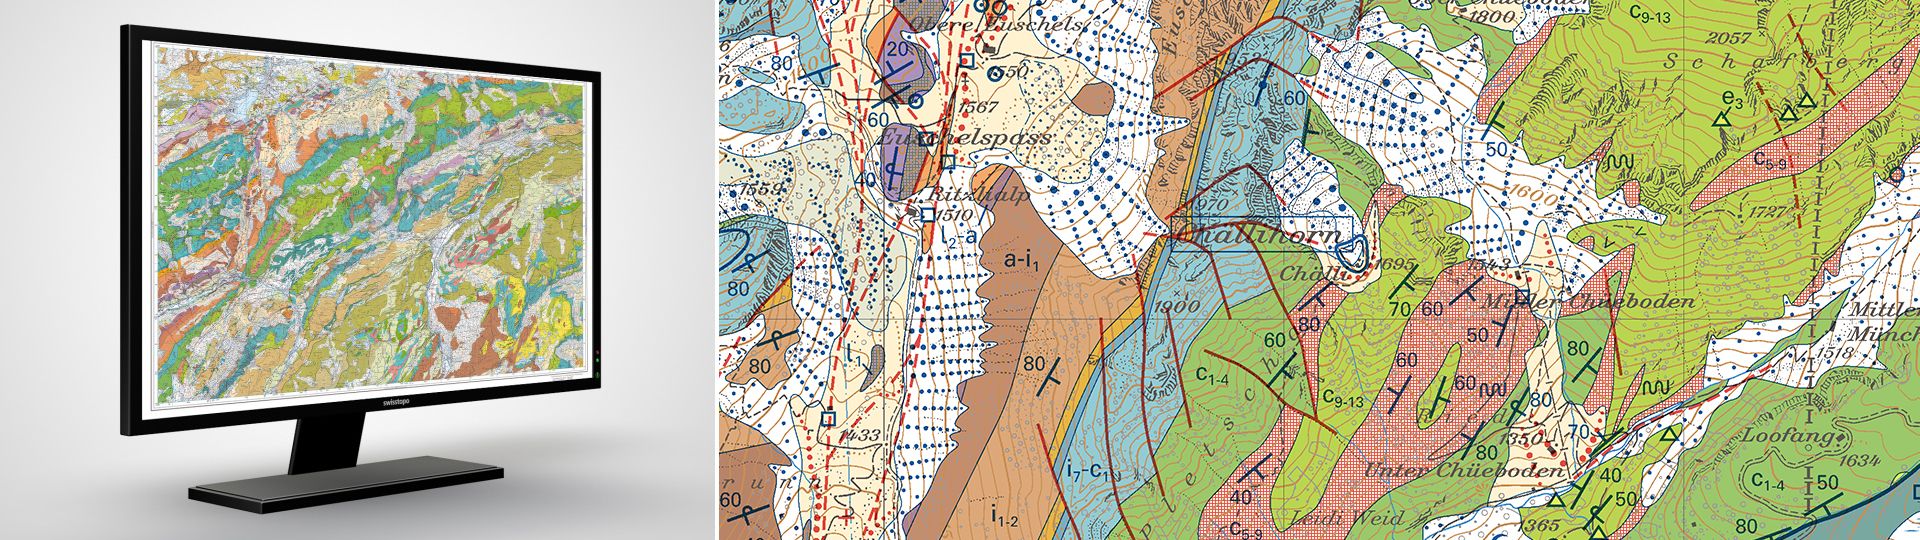 Atlante geologico della Svizzera 1:25 000: carte pixel con note esplicative